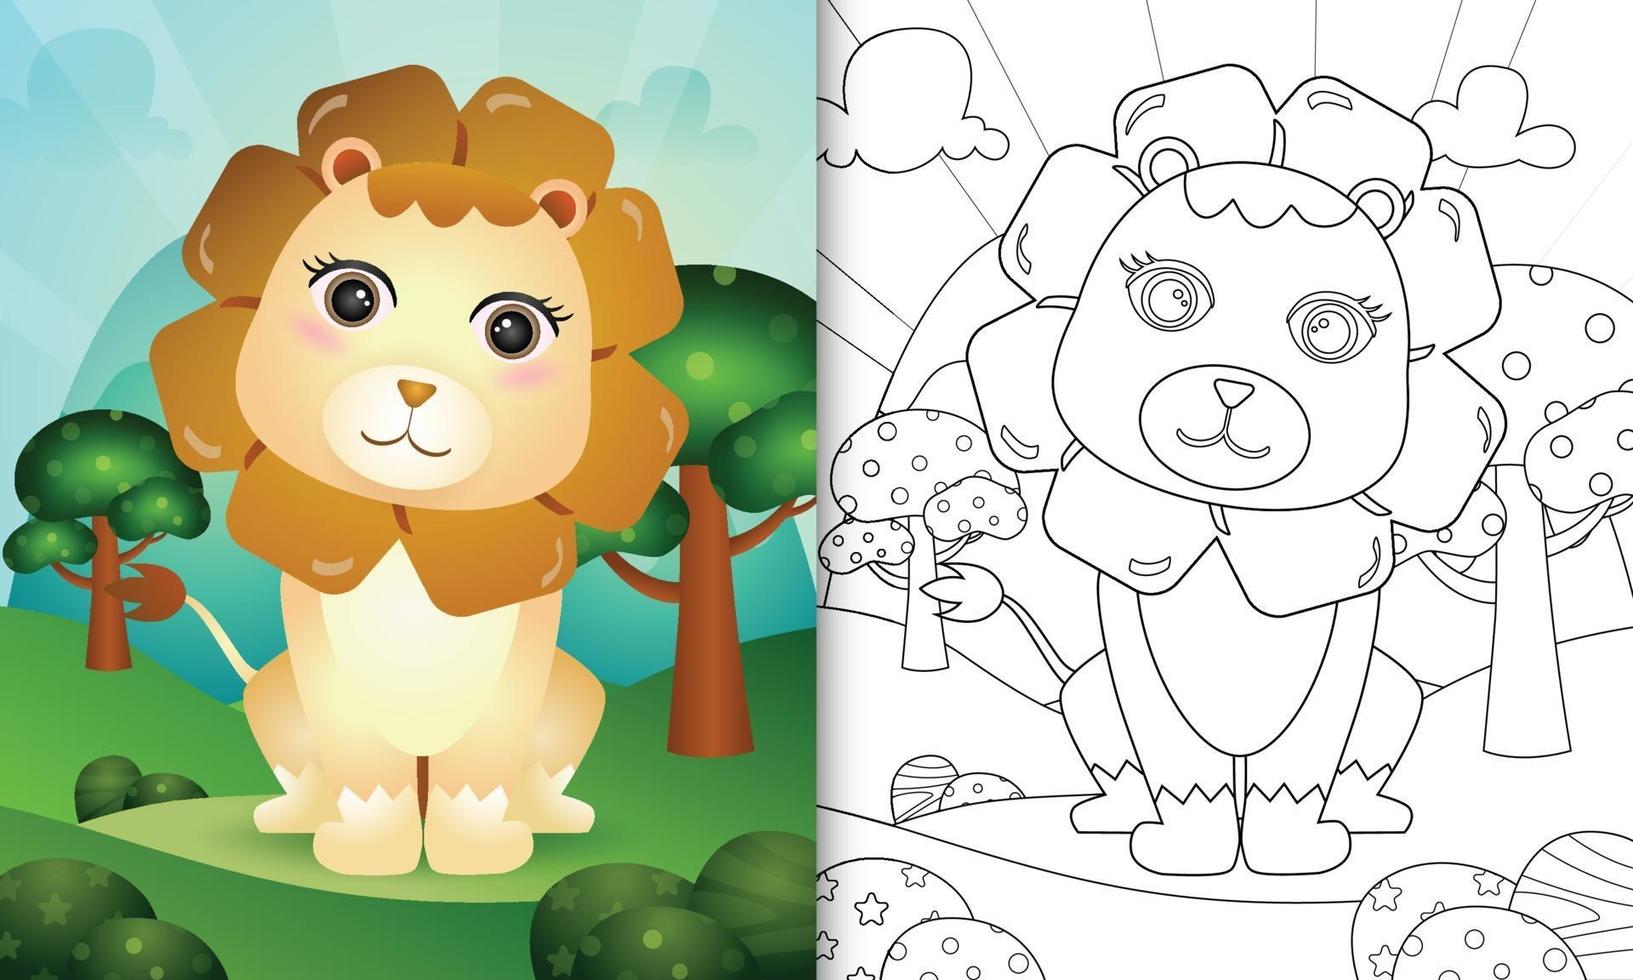 målarbok för barn med en söt lejonkaraktärsillustration vektor